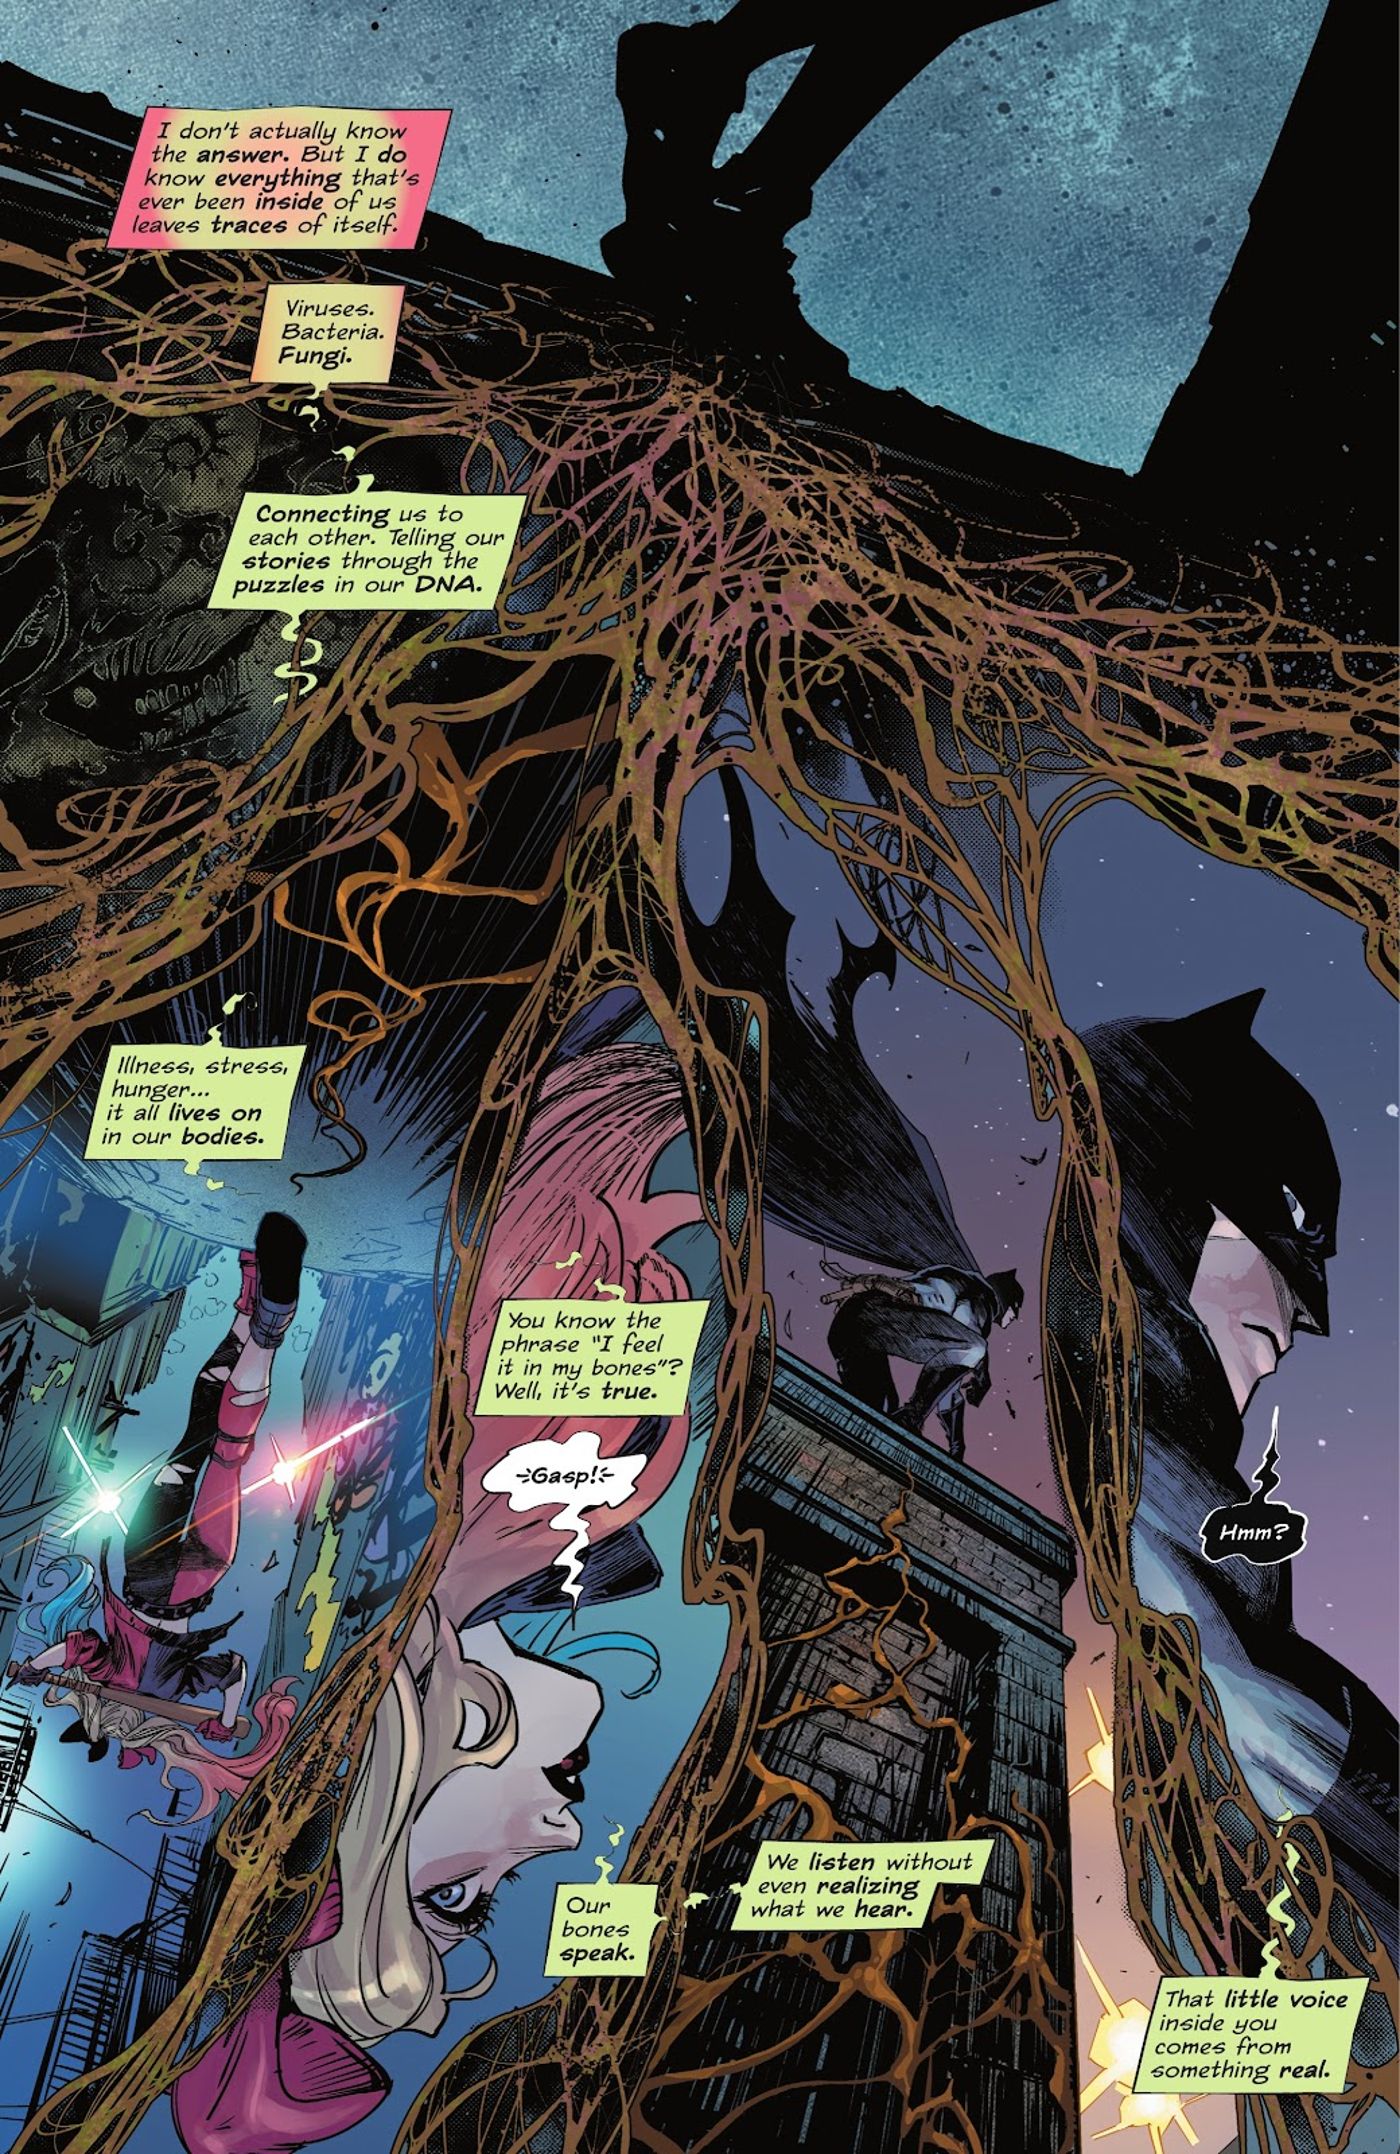 Poison Ivy descreve como todas as coisas vivas estão conectadas.  As raízes conectam o painel.  Batman olha para cima de um telhado. 